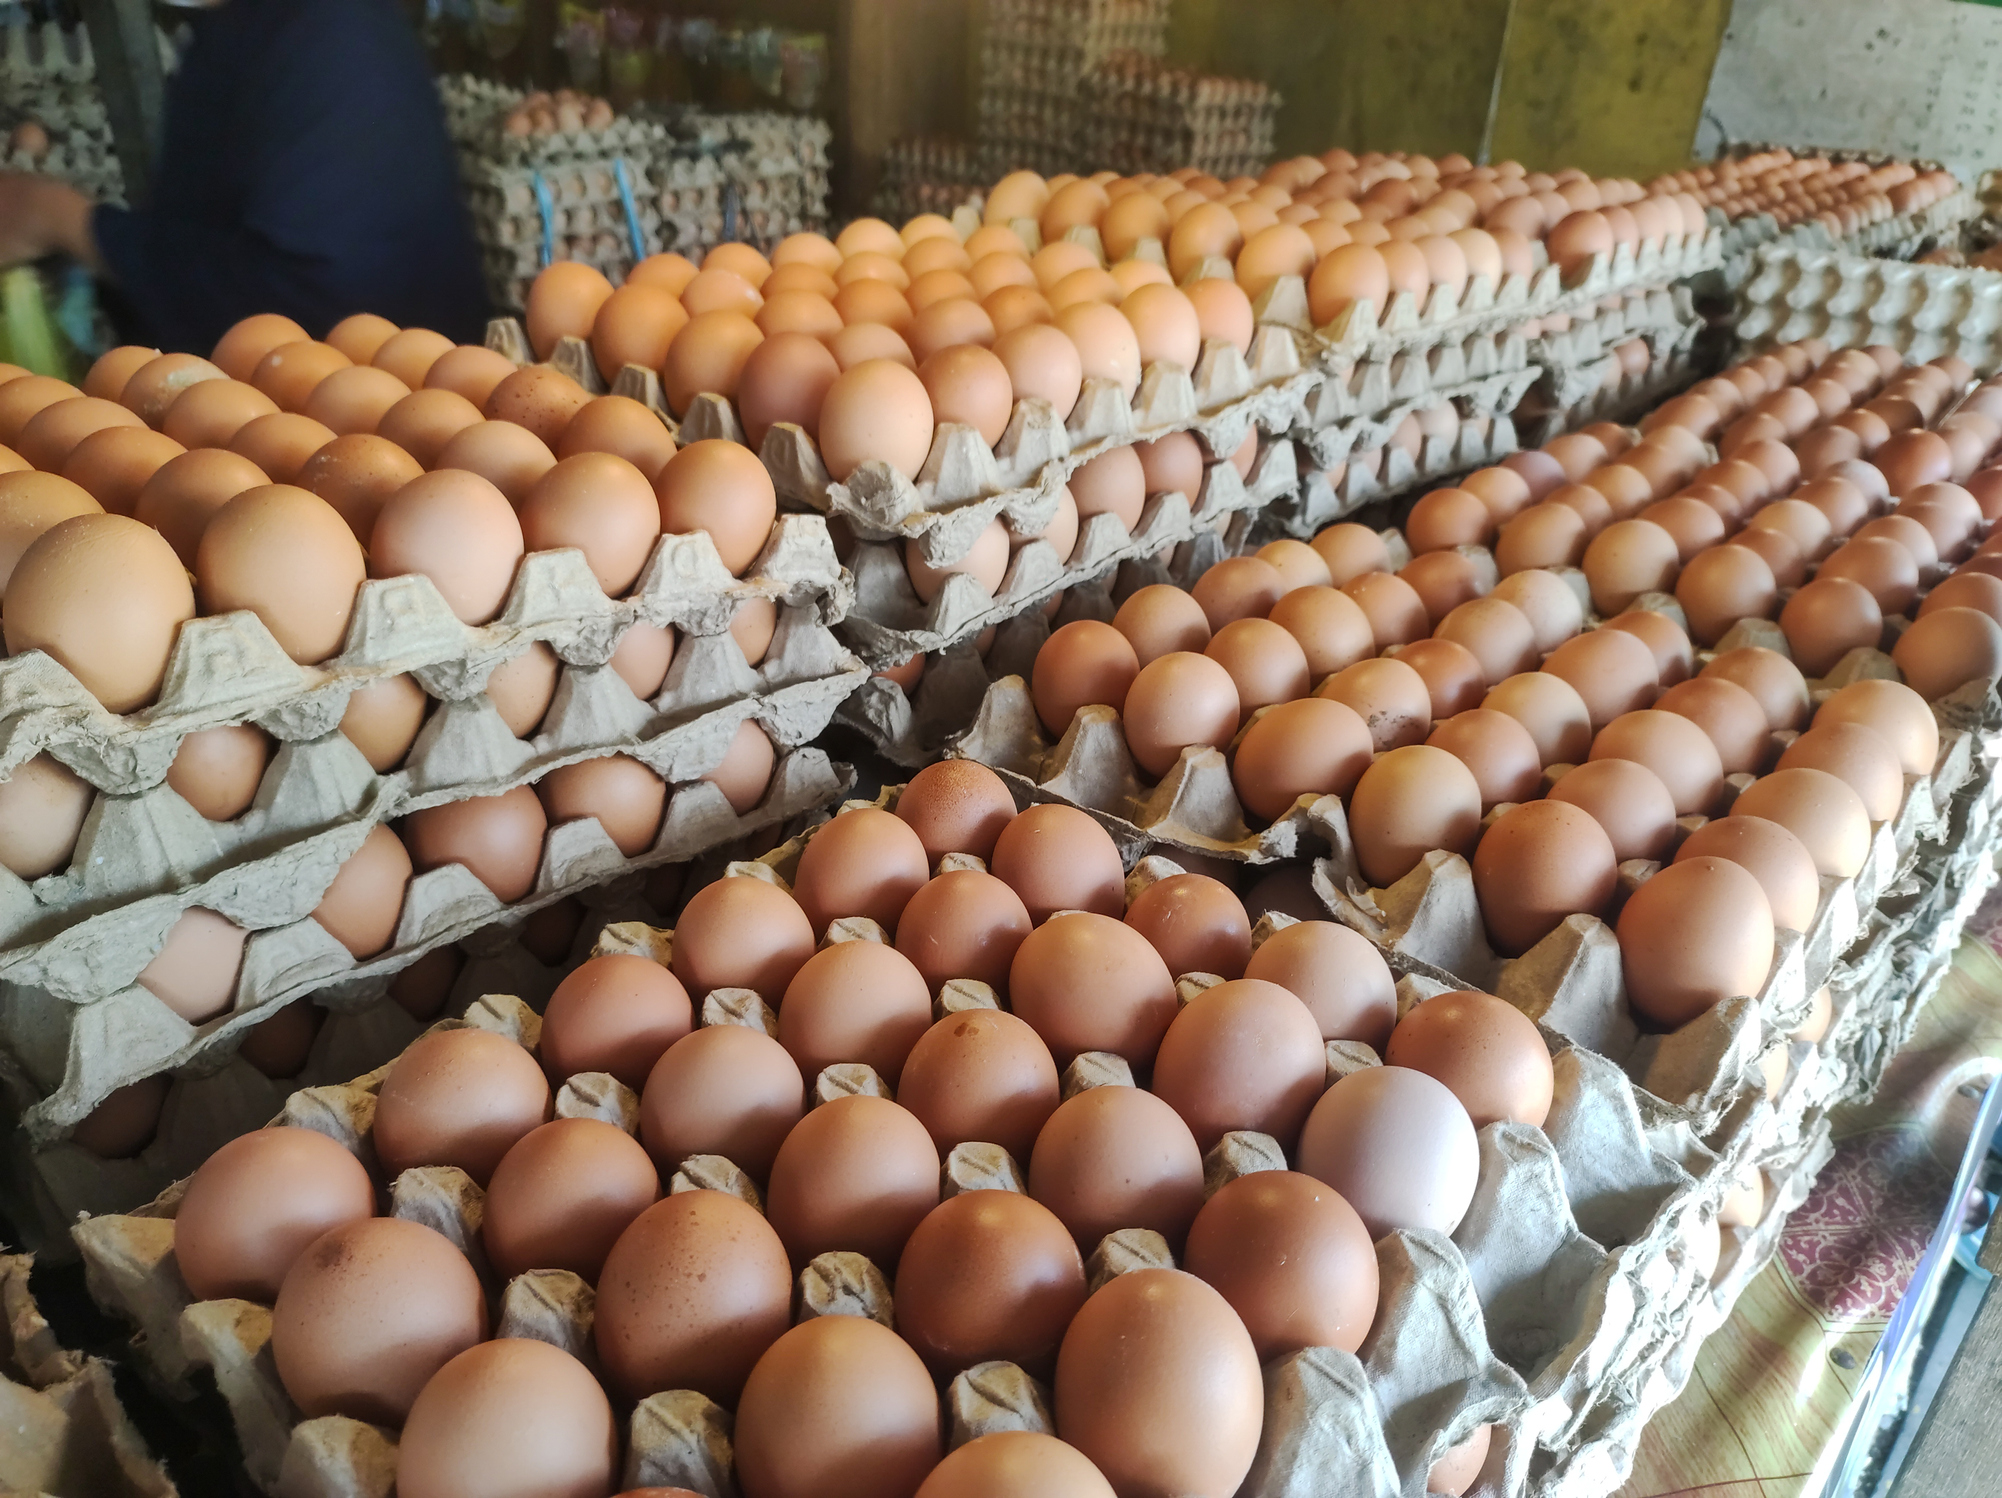 Los beneficios de consumir huevo: nutritivo, barato y seguro